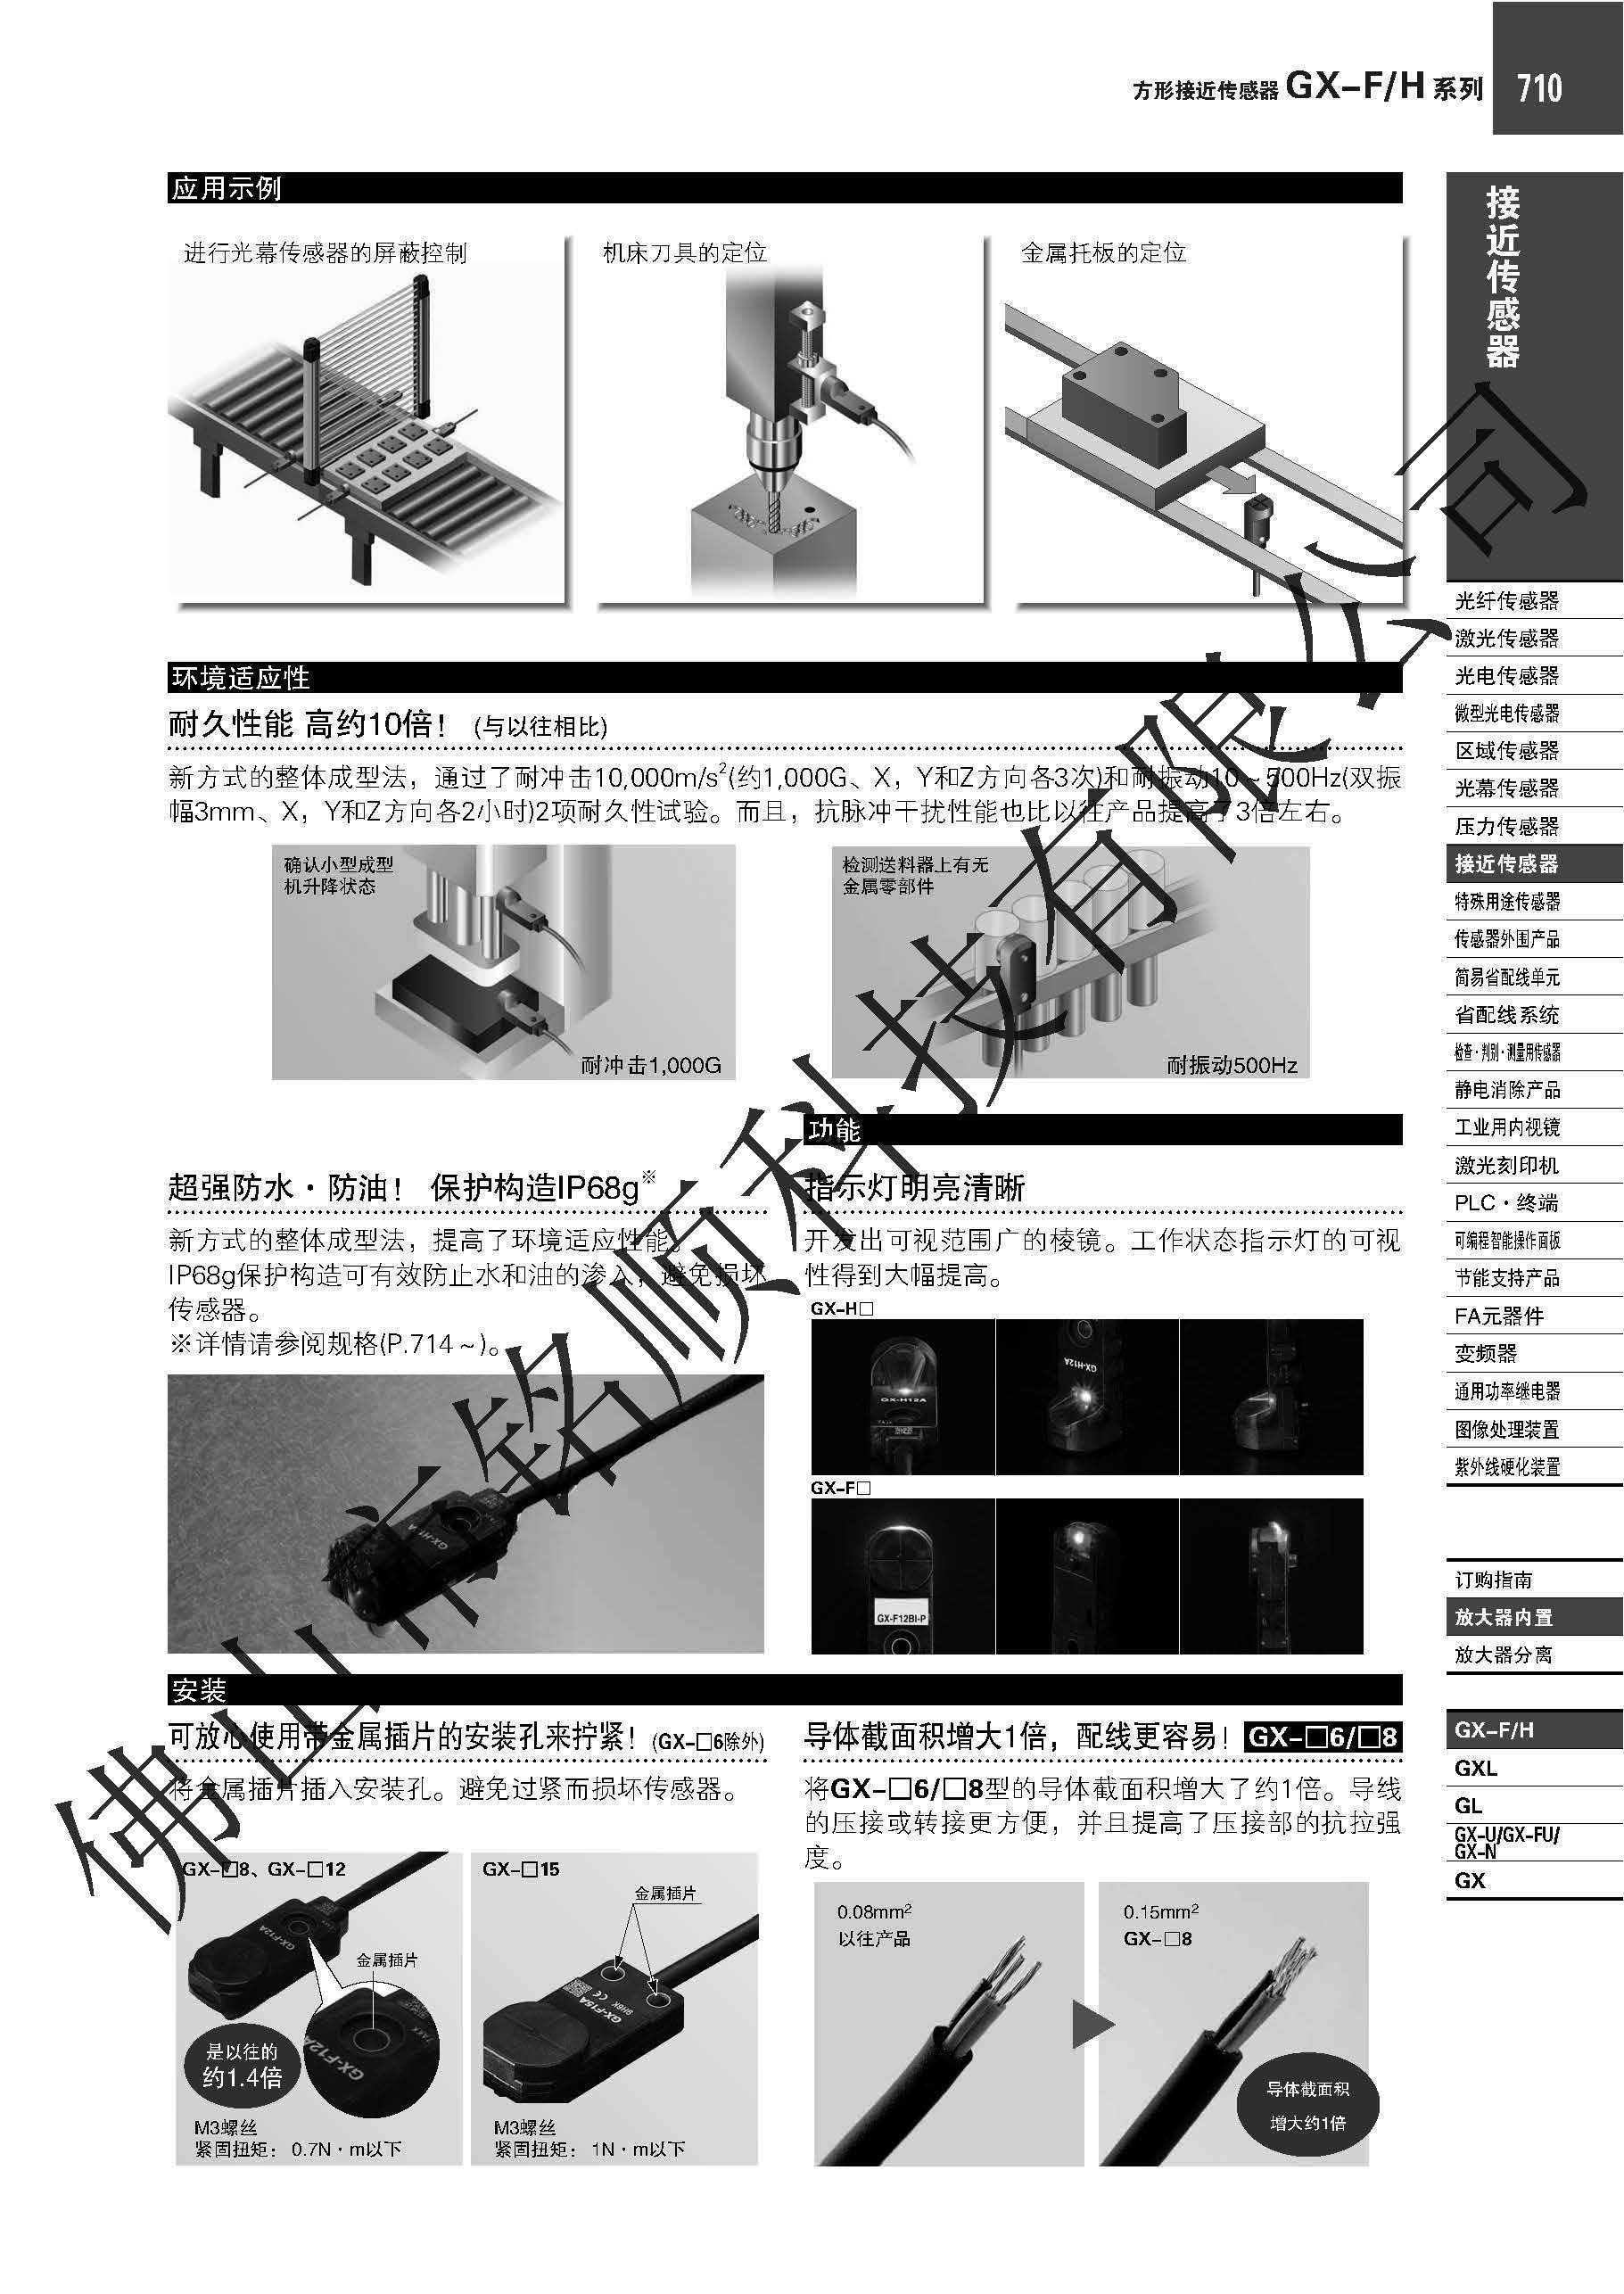 日本松下接近传感器 GX-F8A/GA-H8A 接近传感器,GX-F8A/H8A,检测金属,顶端安装,侧面安装